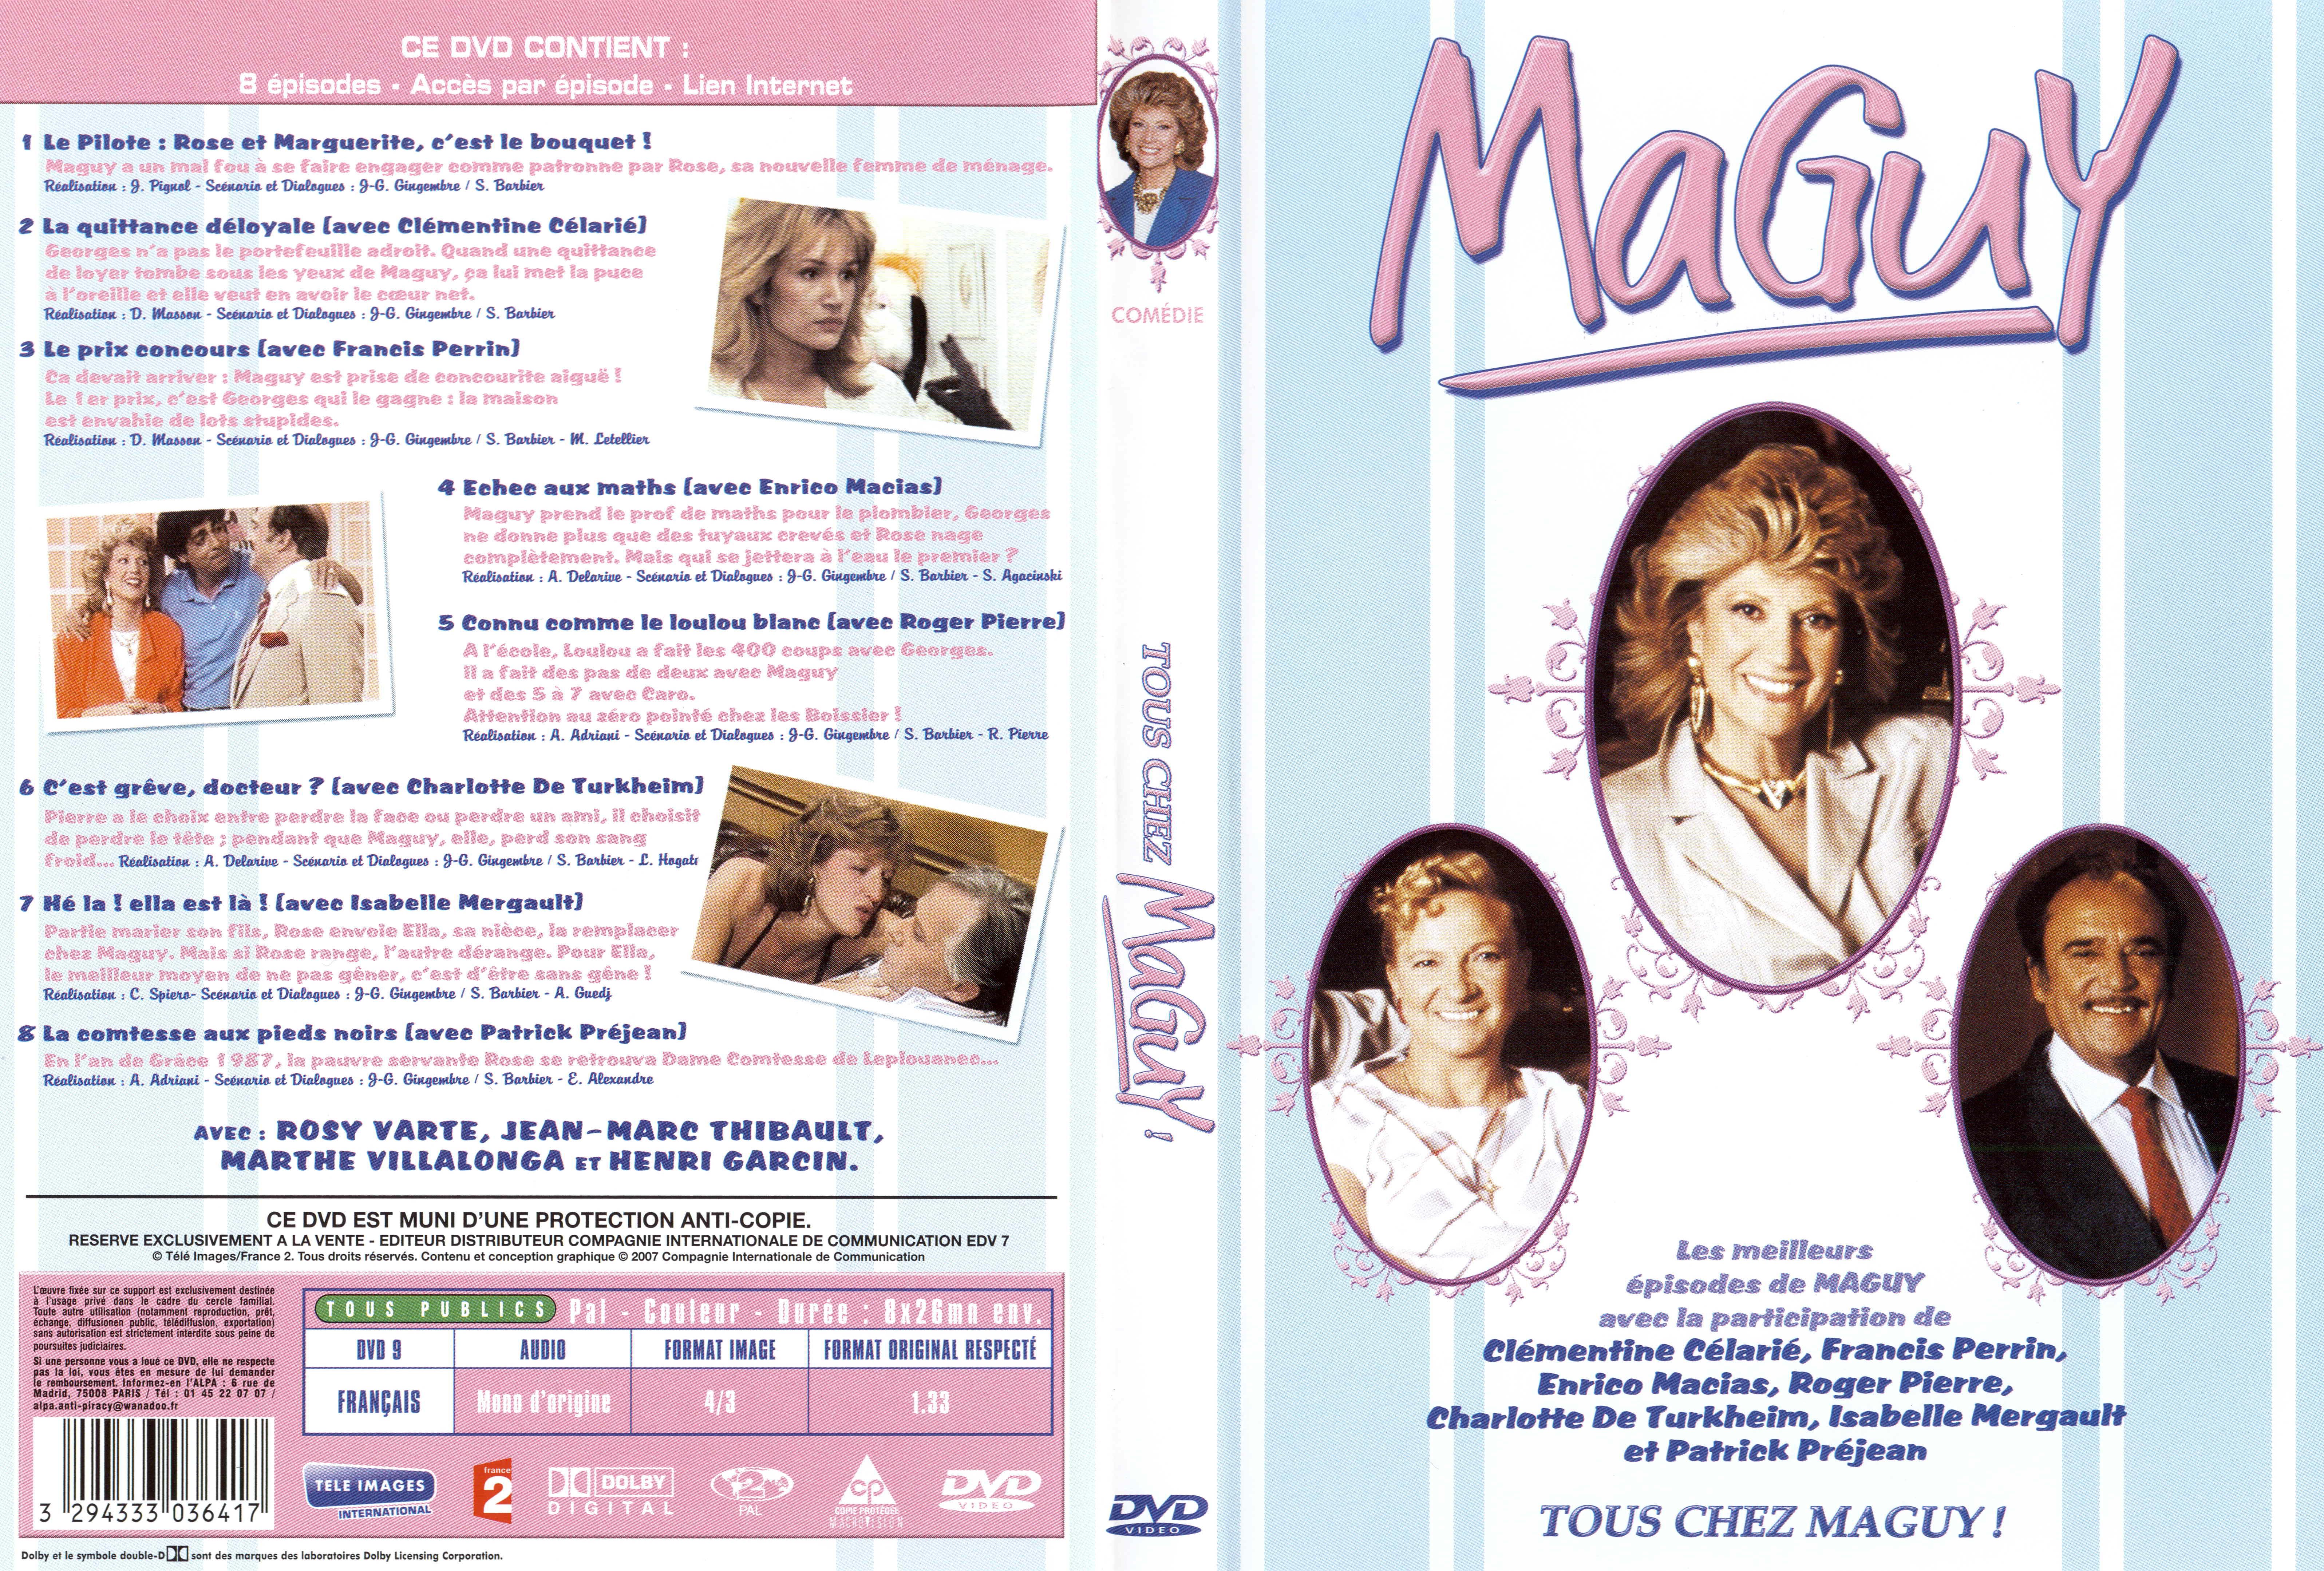 Jaquette DVD Maguy - Tous chez maguy